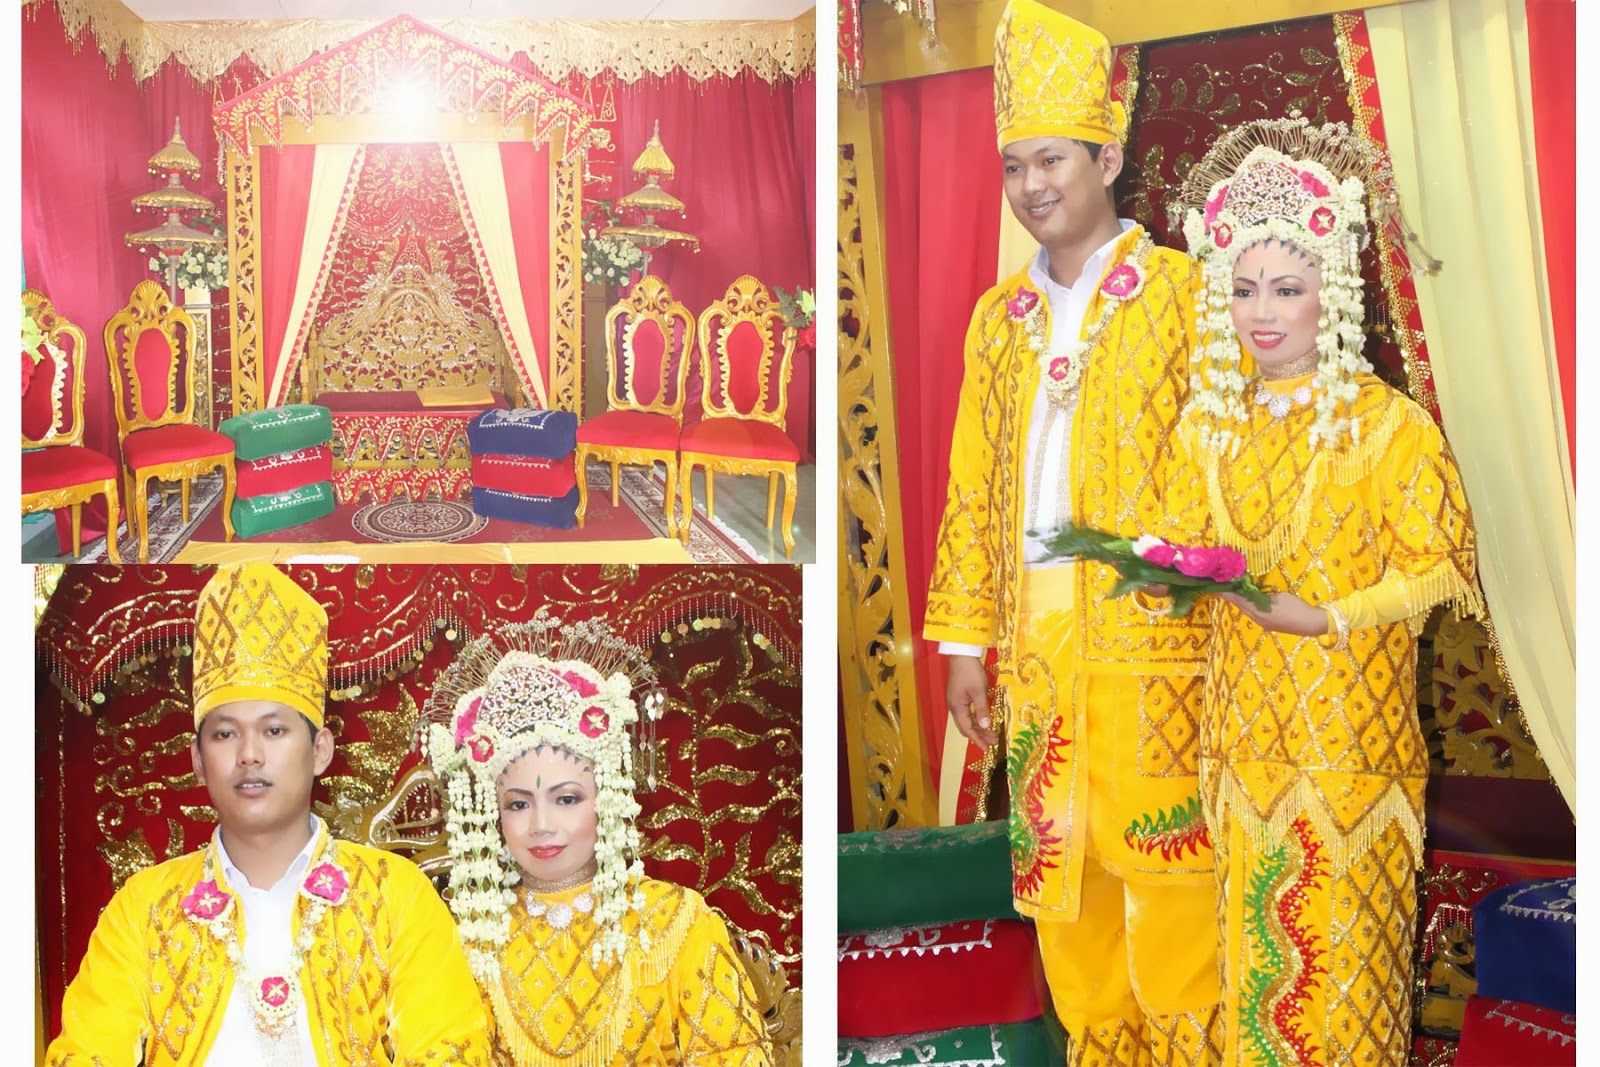 Rias Pengantin Banjar Berjilbab Wedding Husna Dan Fahmi 28 Oktober